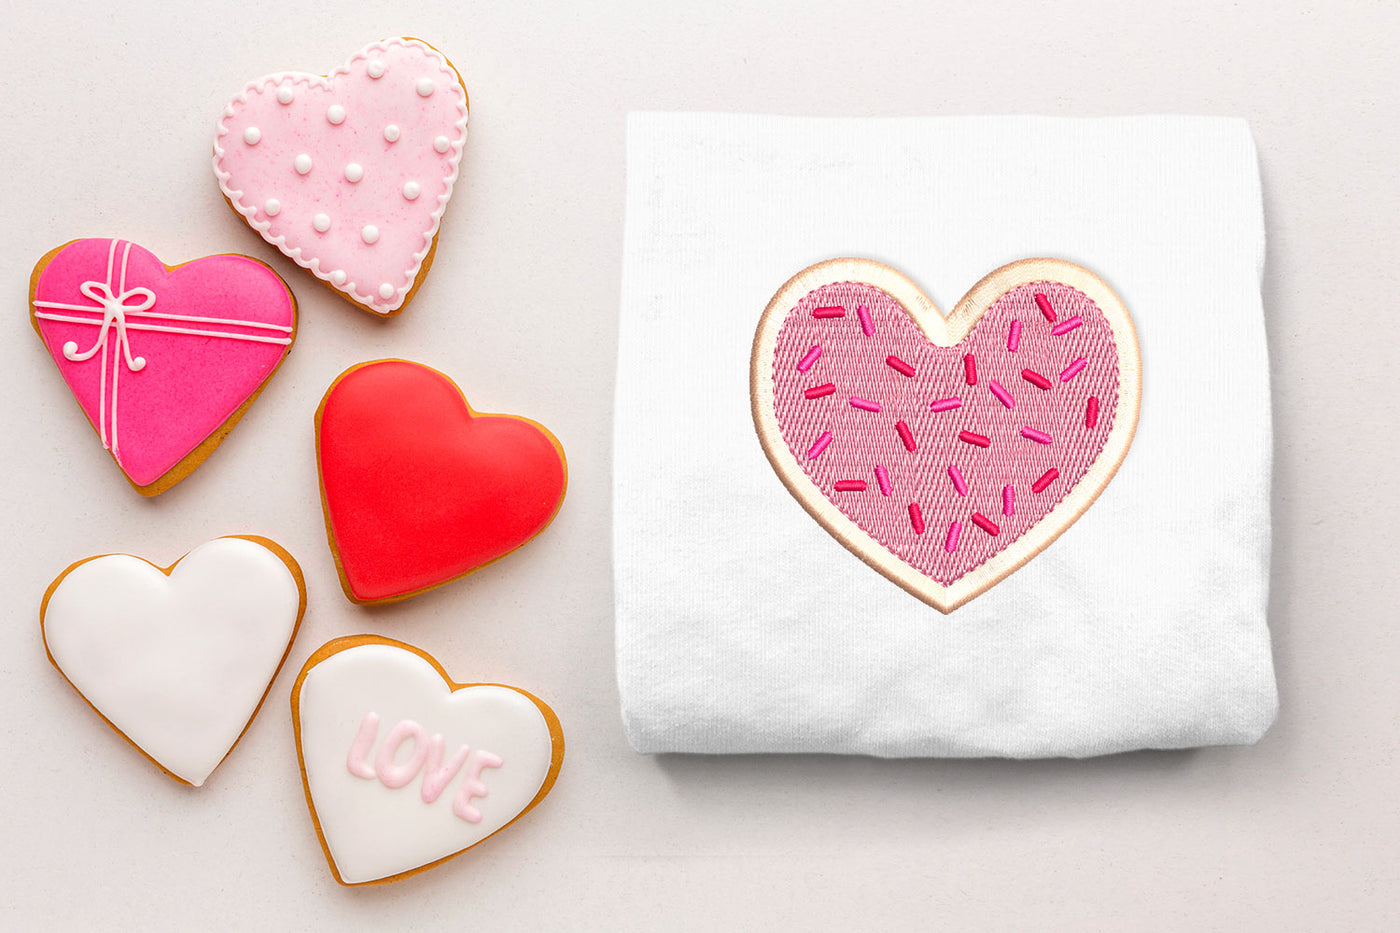 Heart sugar cookie mini embroidery design file